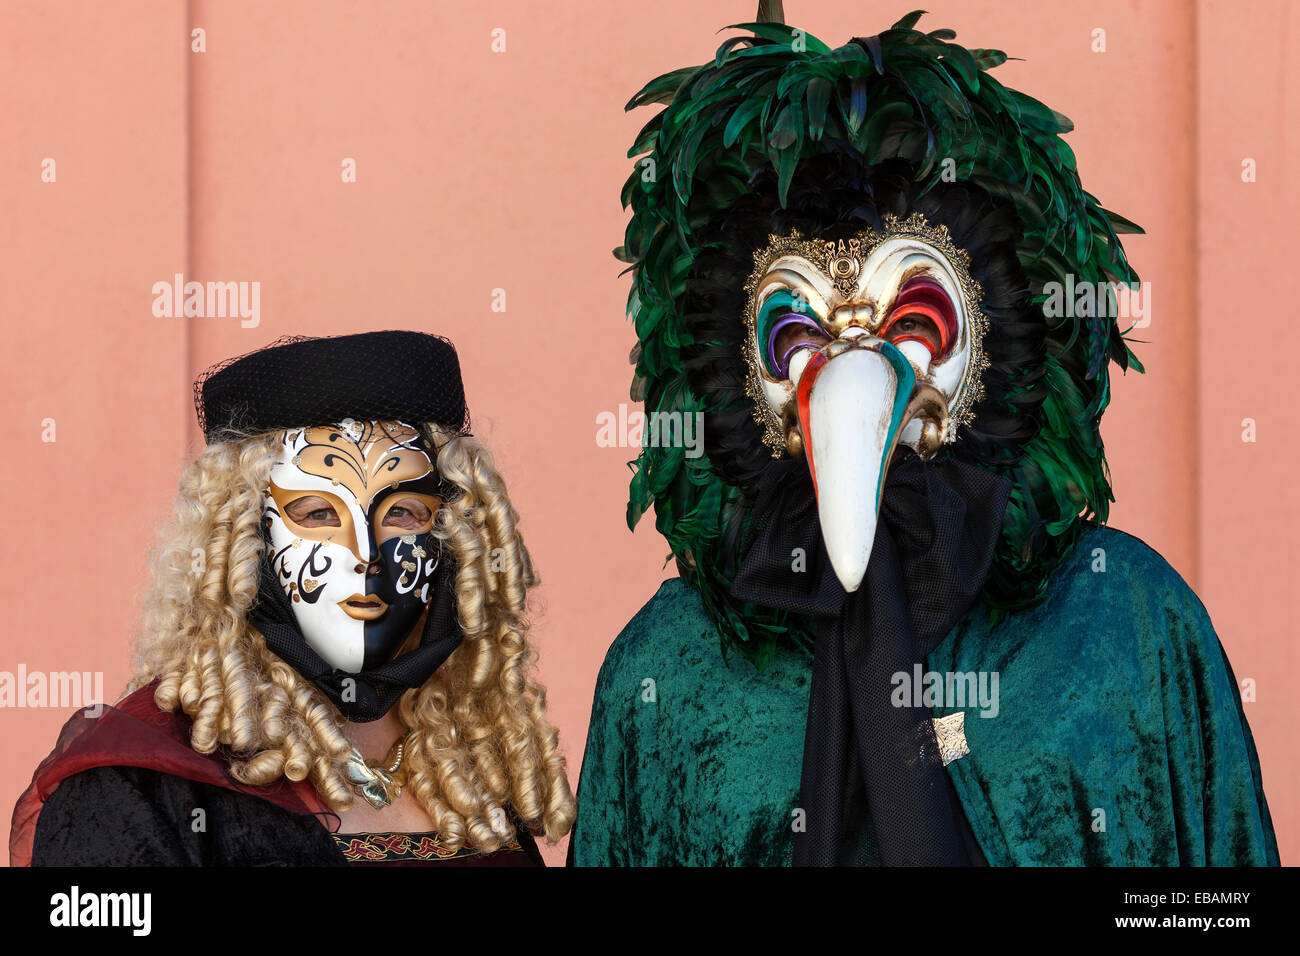 Venezianische Karneval Masken und Kostüme in der venezianischen Messe Ludwigsburg, Baden-Württemberg, Deutschland Stockfoto